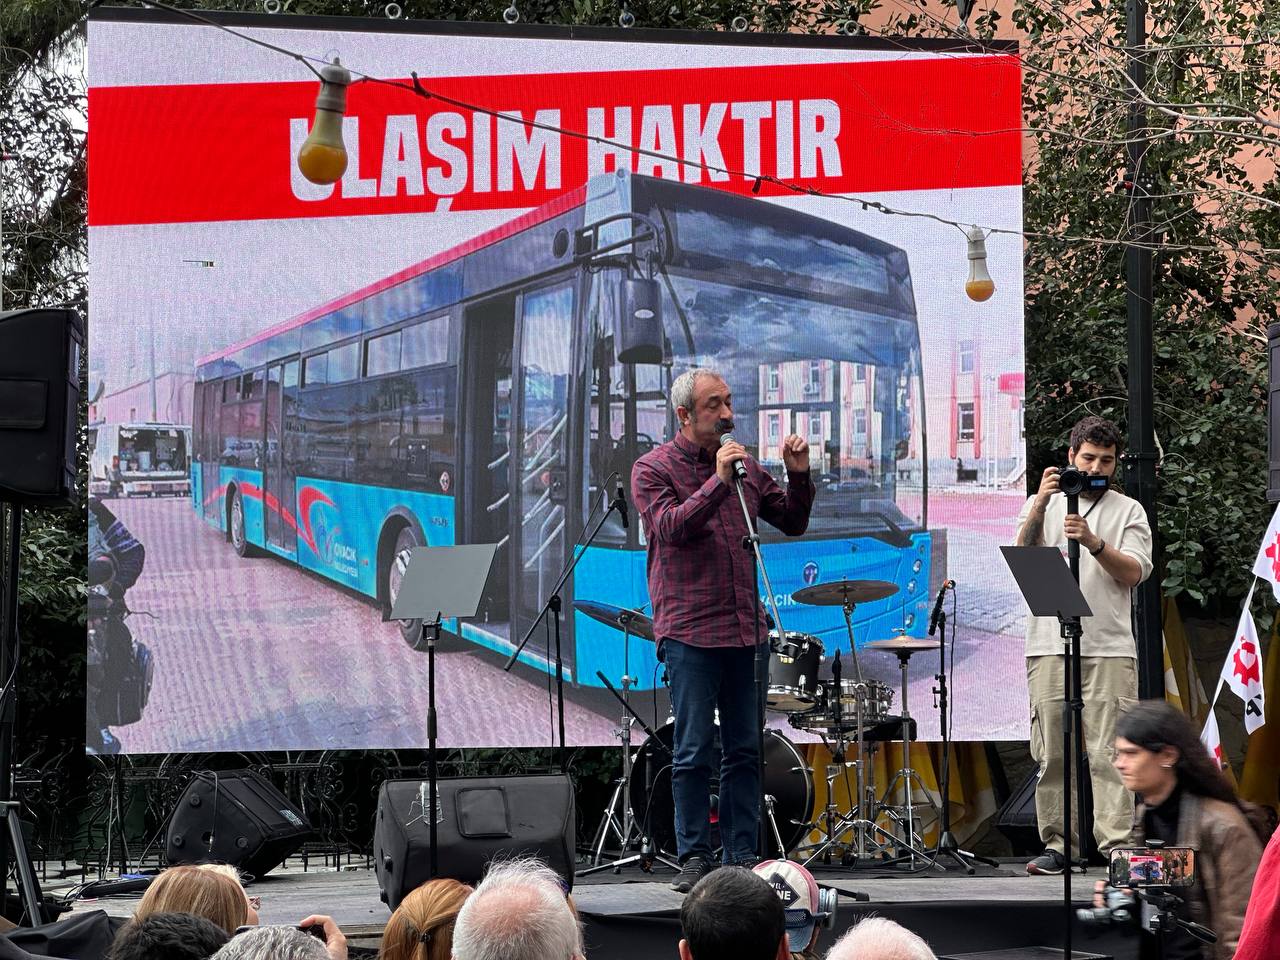 Maçoğlu Kadıköy’de halkla buluştu, programını açıkladı: Kadıköy’ü ranta kapatıp, halka açacağız